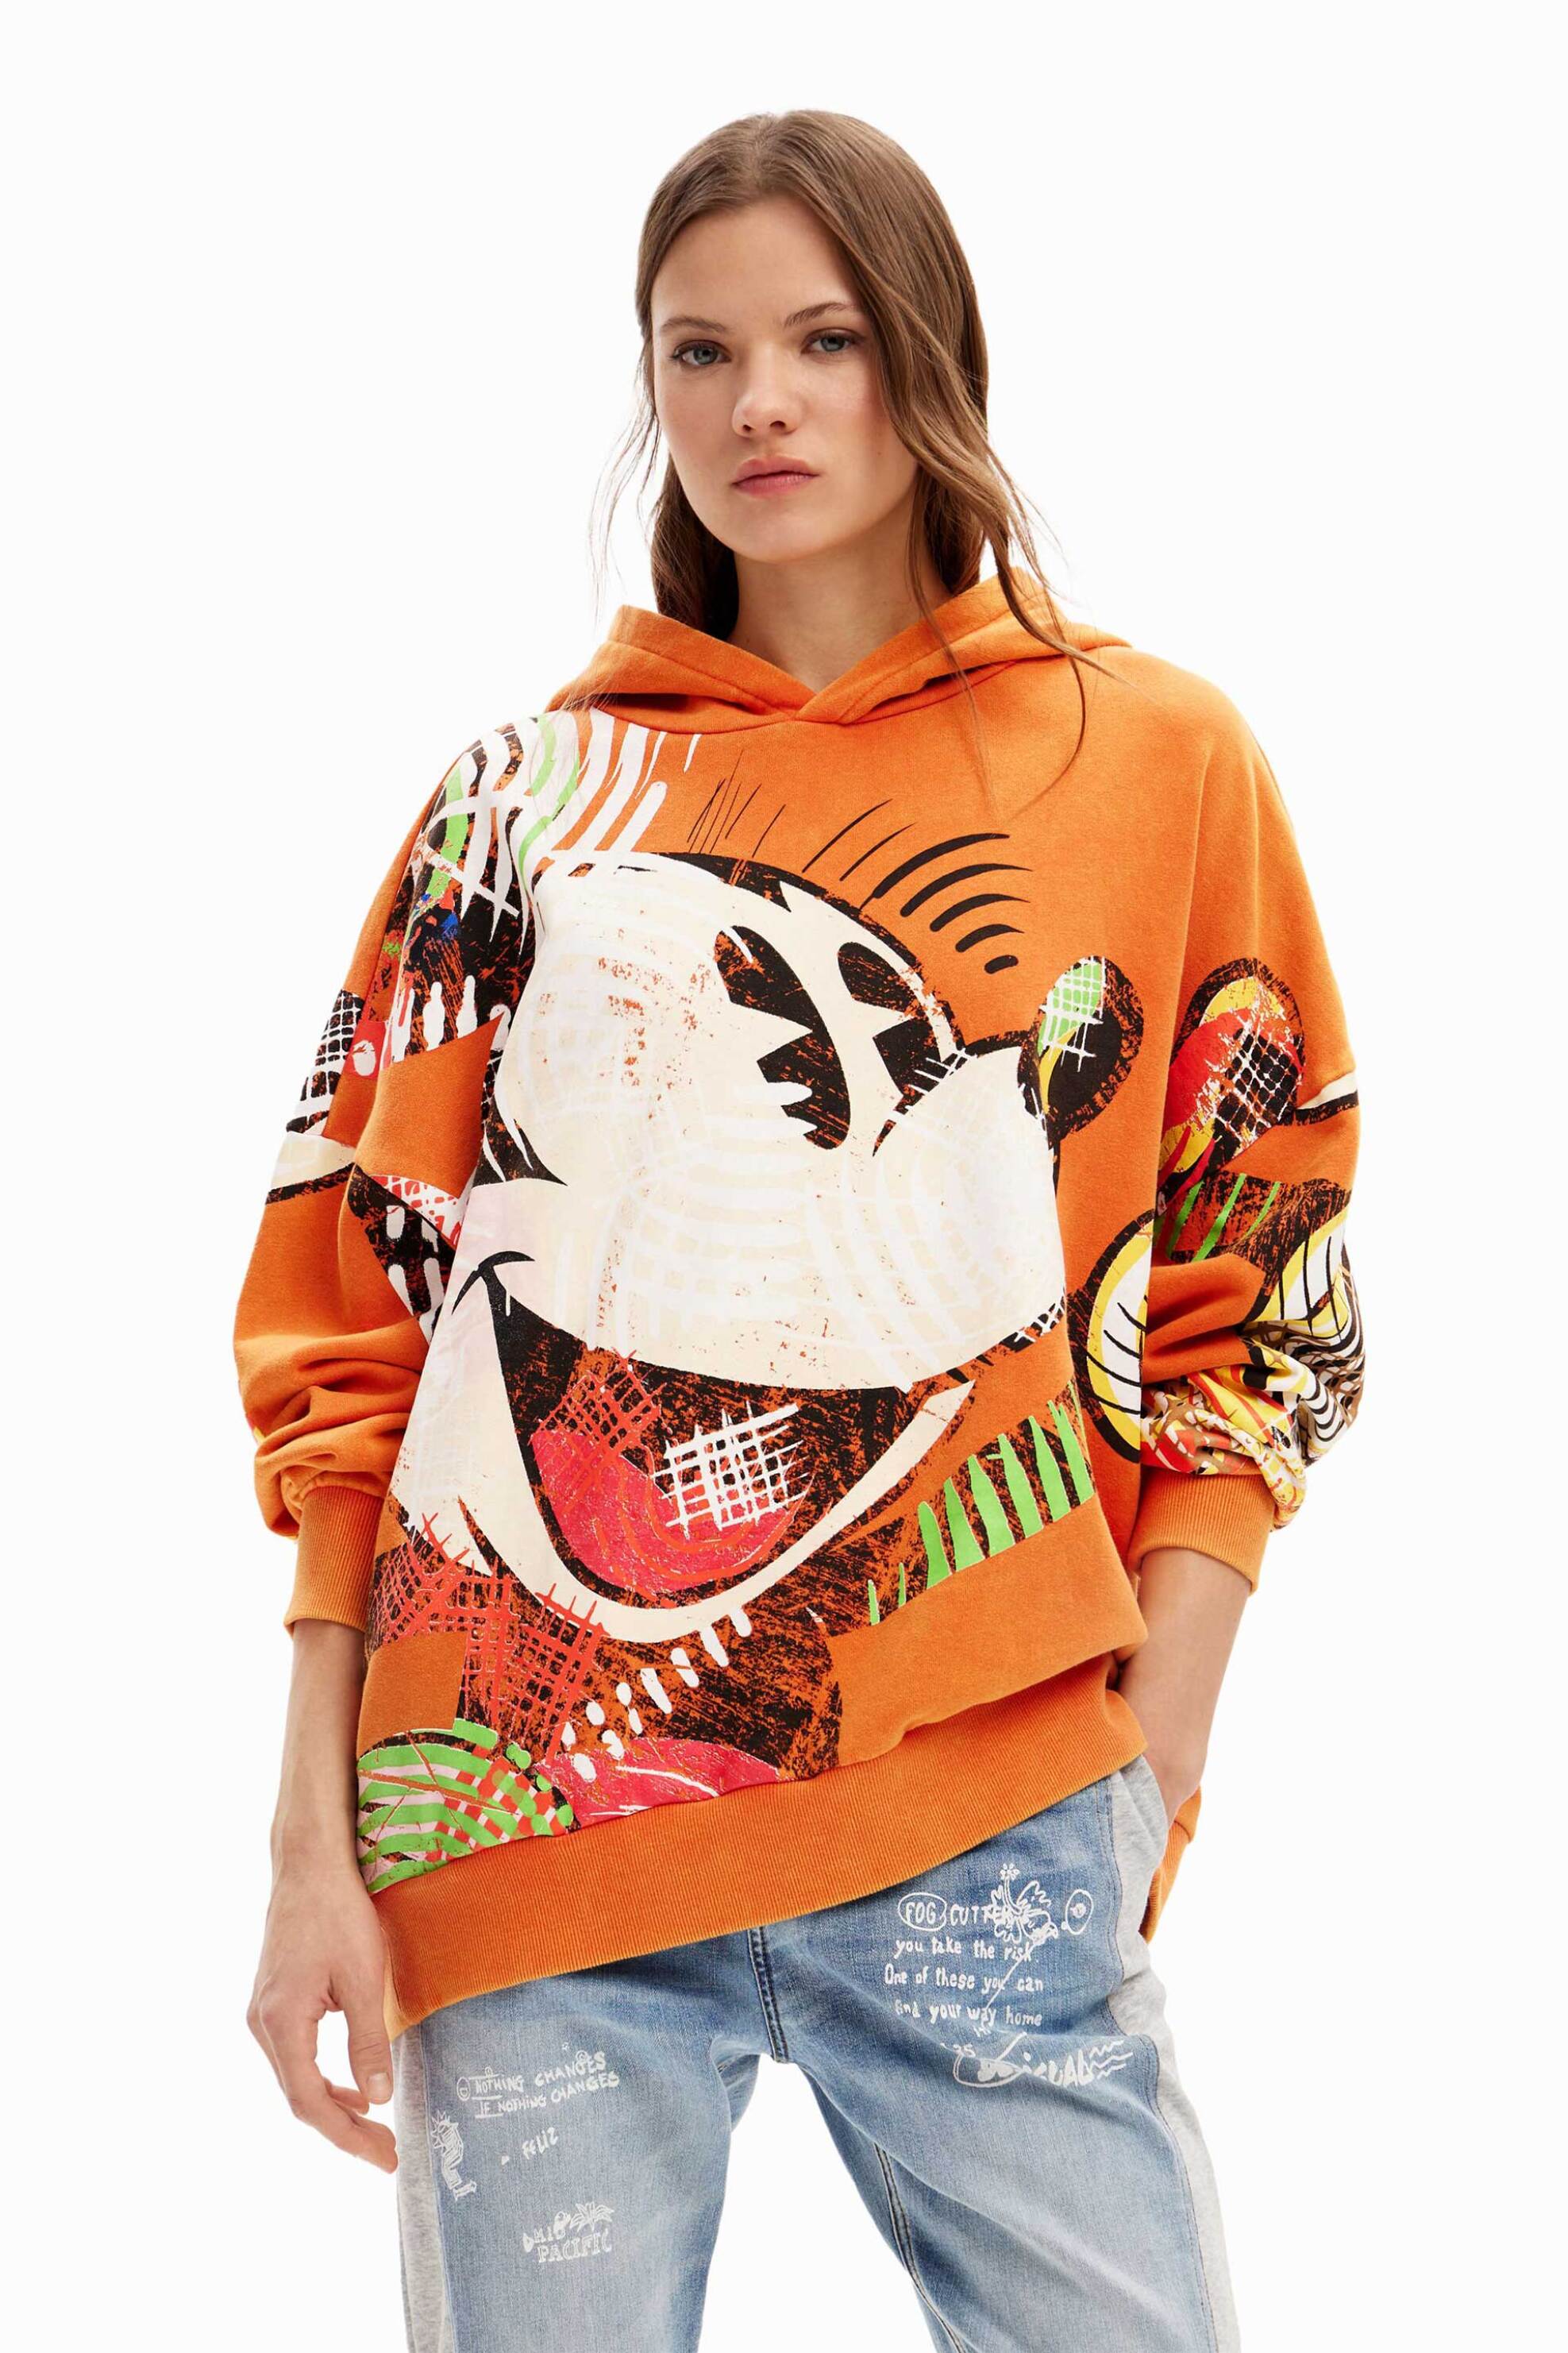 Γυναικεία Ρούχα & Αξεσουάρ > Γυναικεία Ρούχα > Γυναικεία Φούτερ Desigual γυναικεία μπλούζα φούτερ βαμβακερή με all-over πολύχρωμο Mickey Mouse print "Mickey Cubist" - 24SWSK57 Πορτοκαλί